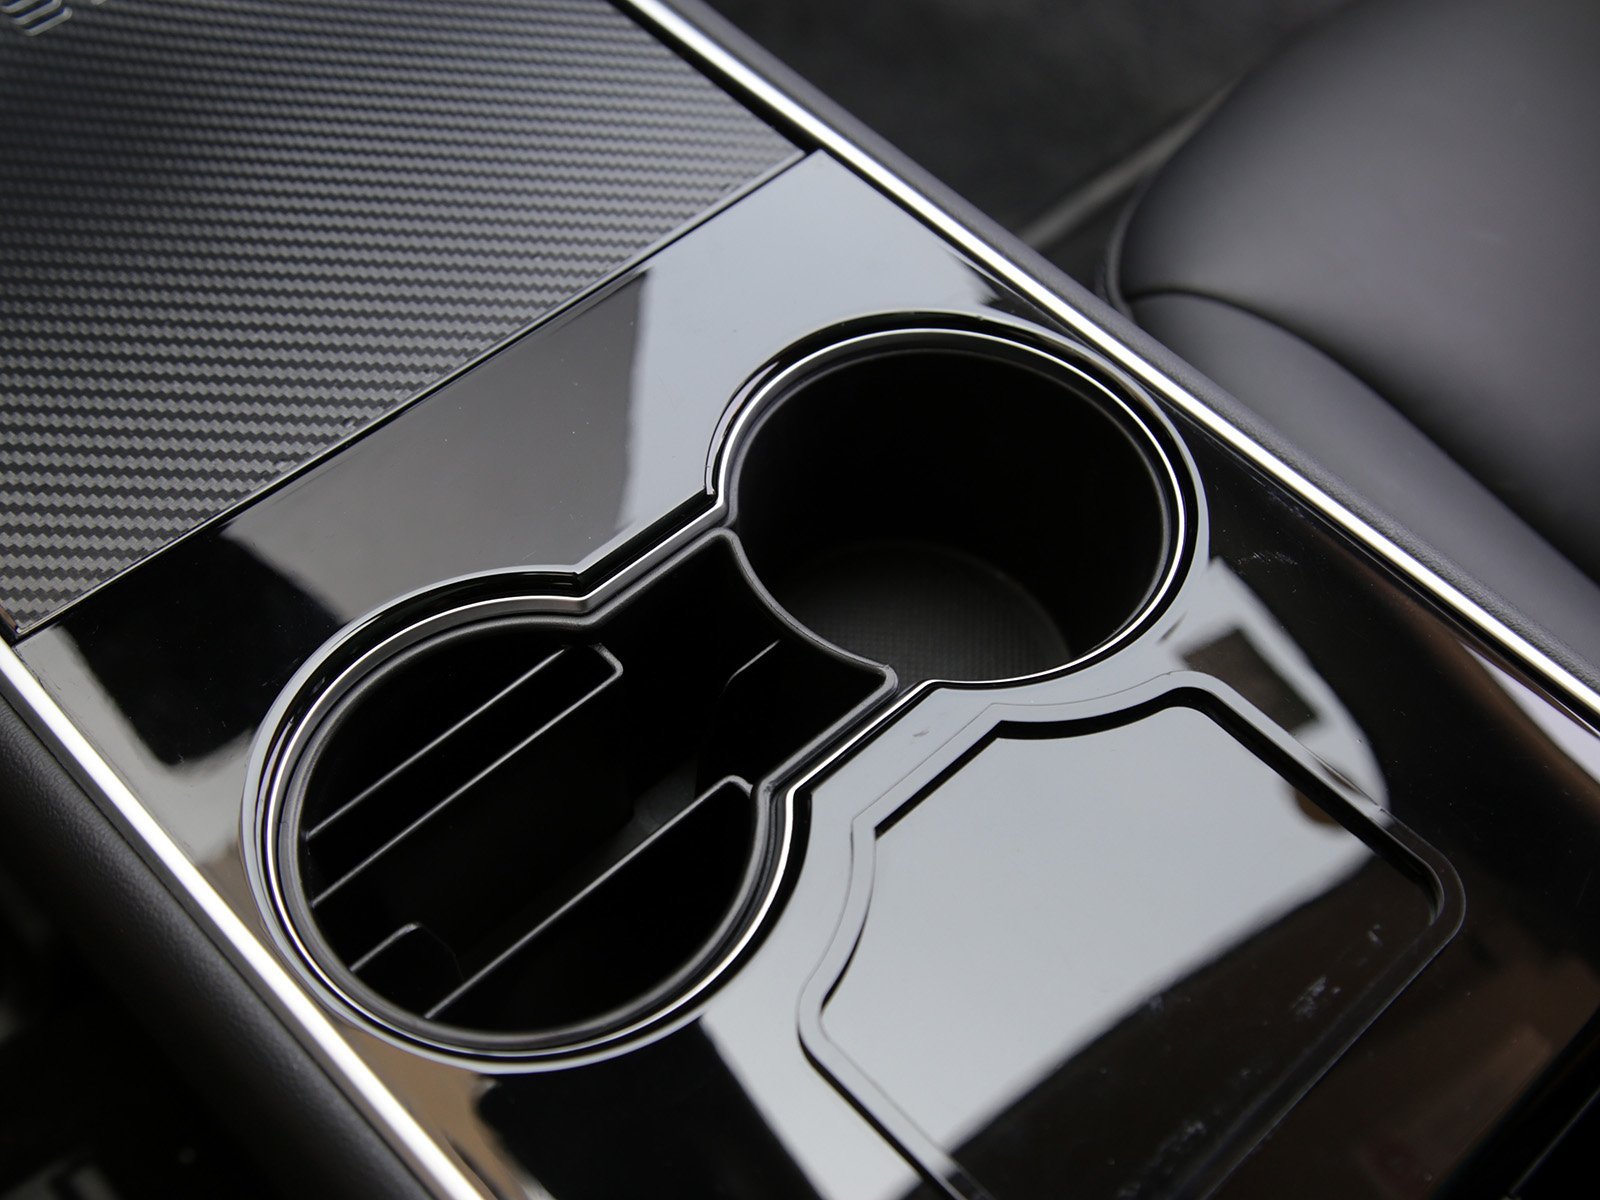 Insert de porte-gobelet console centrale pour Tesla Model 3/Y